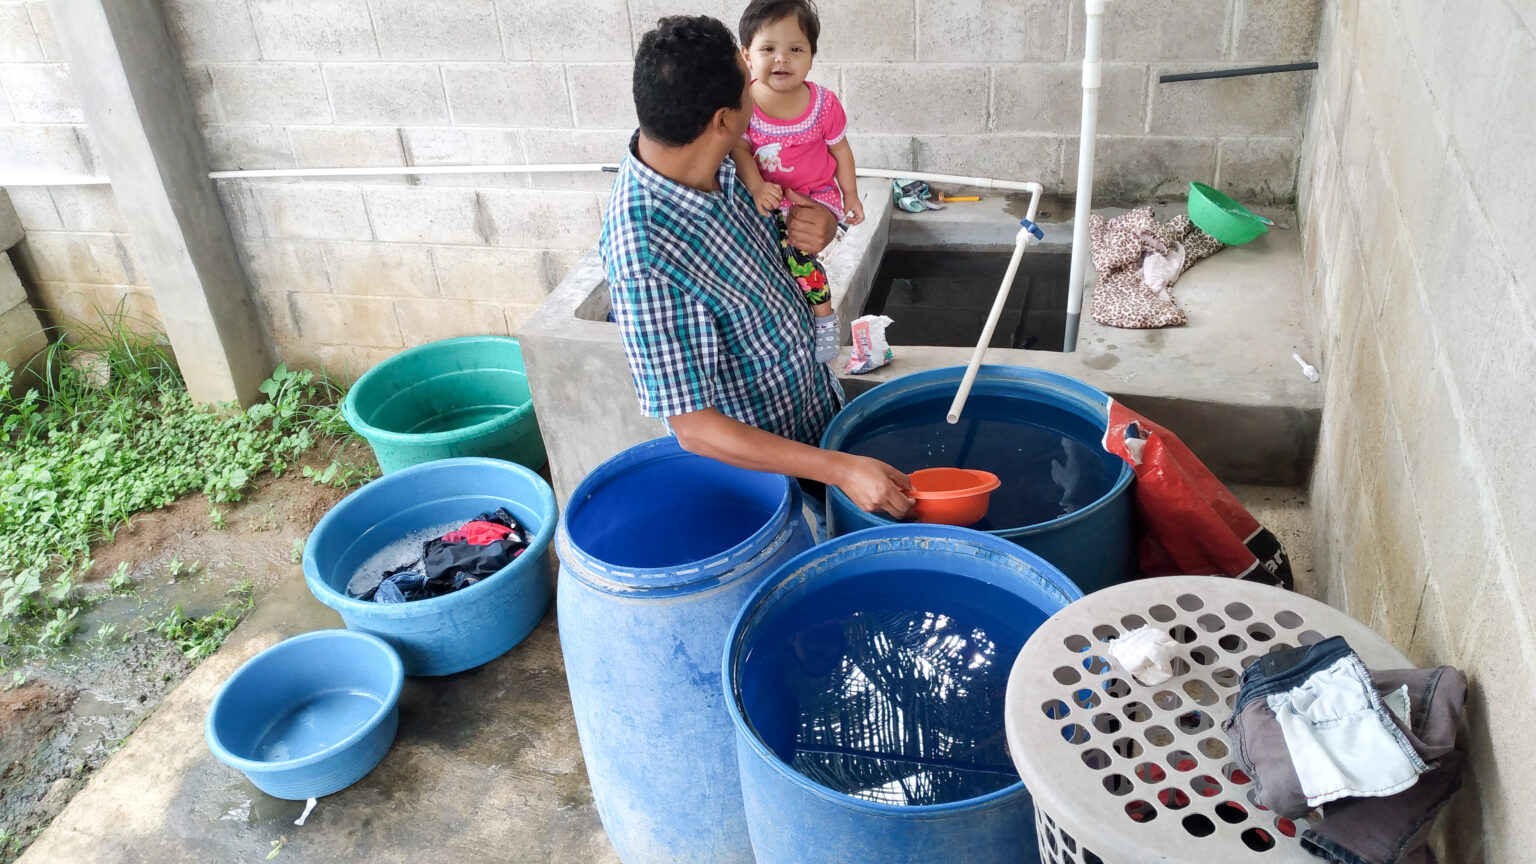 Familias pobres se enfrentan por el agua con consorcio inmobiliario en El Salvador